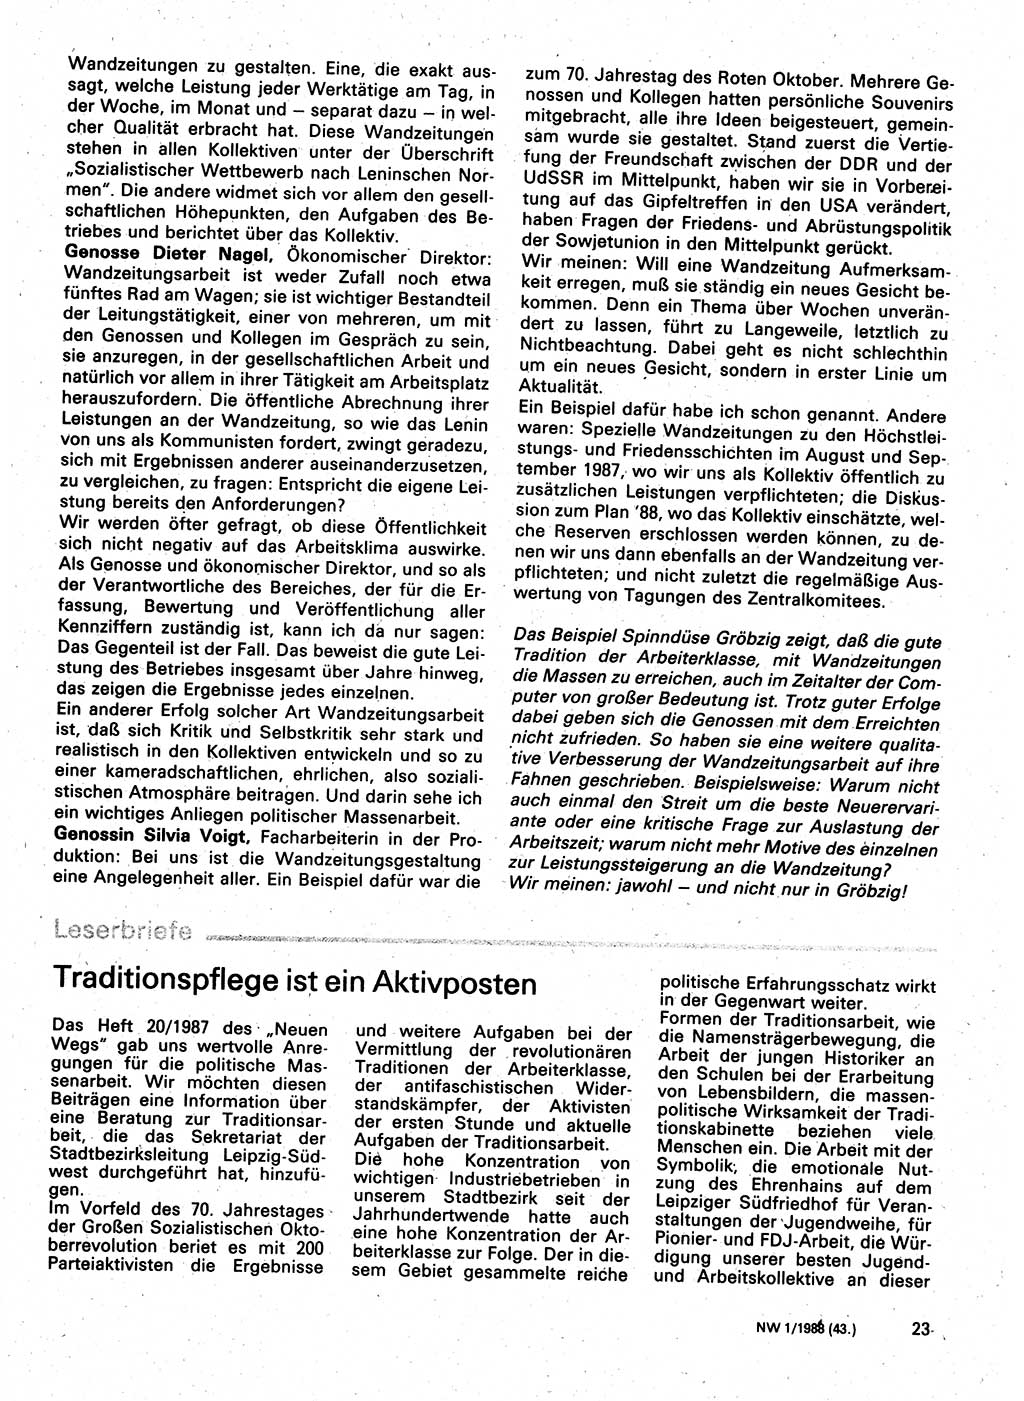 Neuer Weg (NW), Organ des Zentralkomitees (ZK) der SED (Sozialistische Einheitspartei Deutschlands) für Fragen des Parteilebens, 43. Jahrgang [Deutsche Demokratische Republik (DDR)] 1988, Seite 23 (NW ZK SED DDR 1988, S. 23)